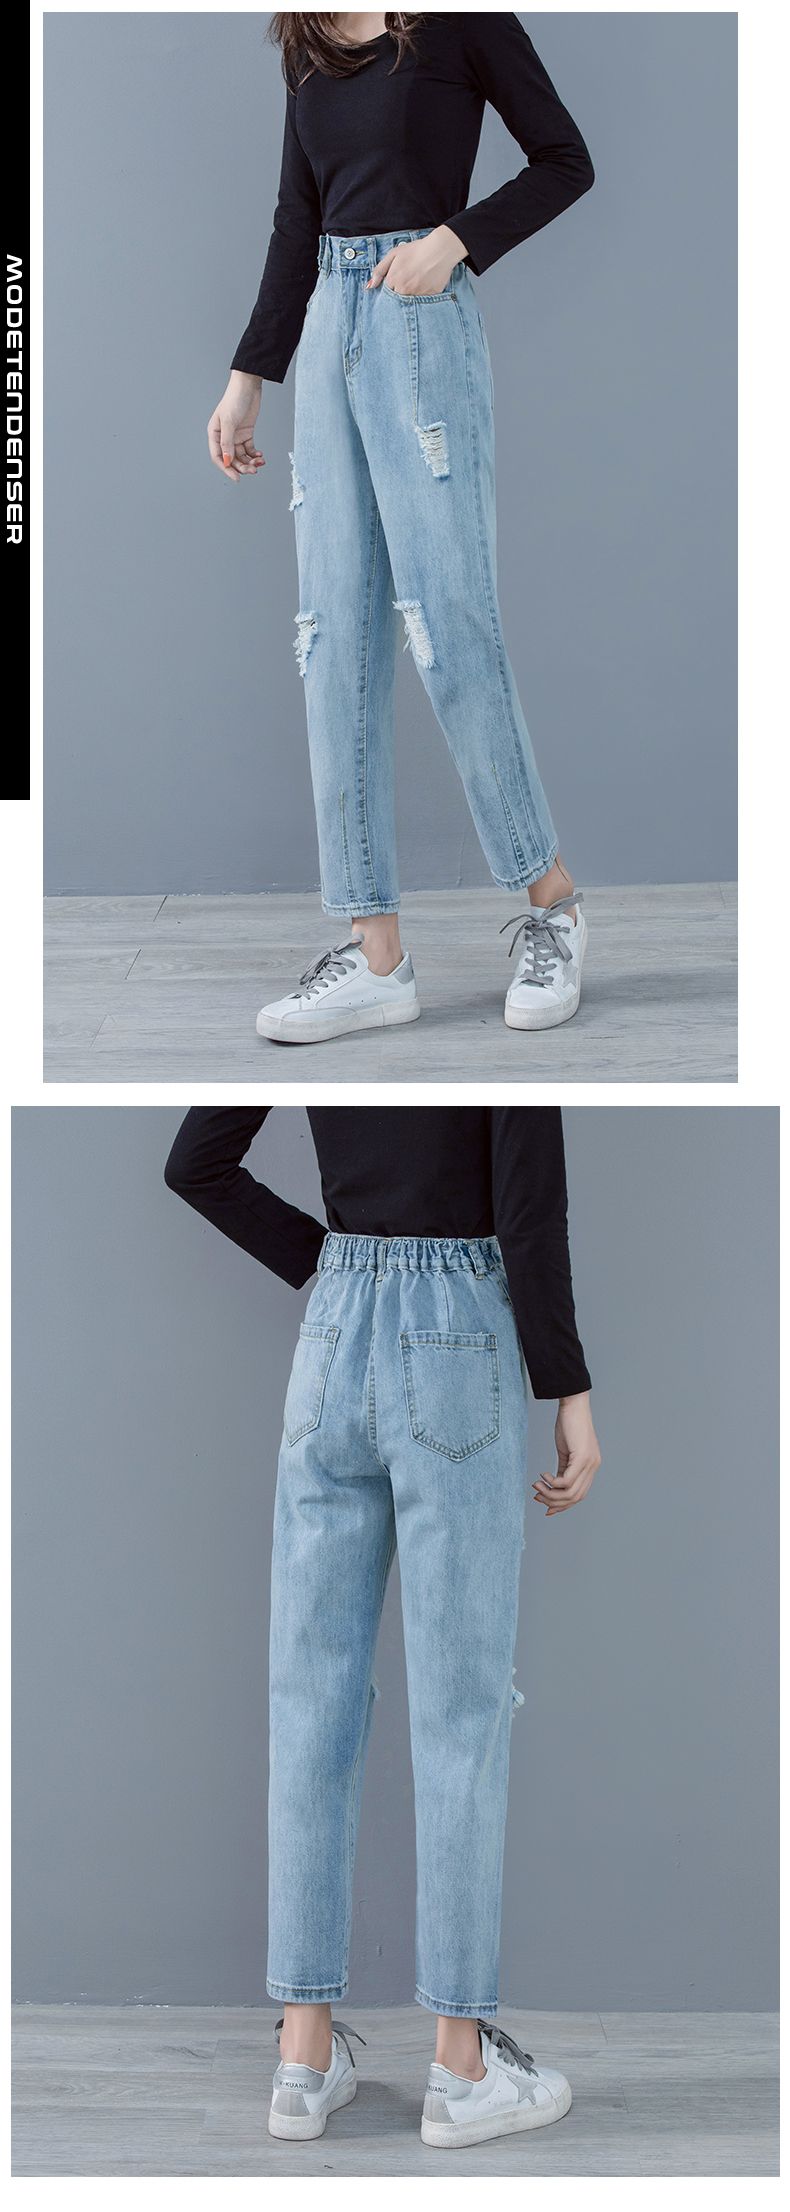 kvinders jeans slidte 2